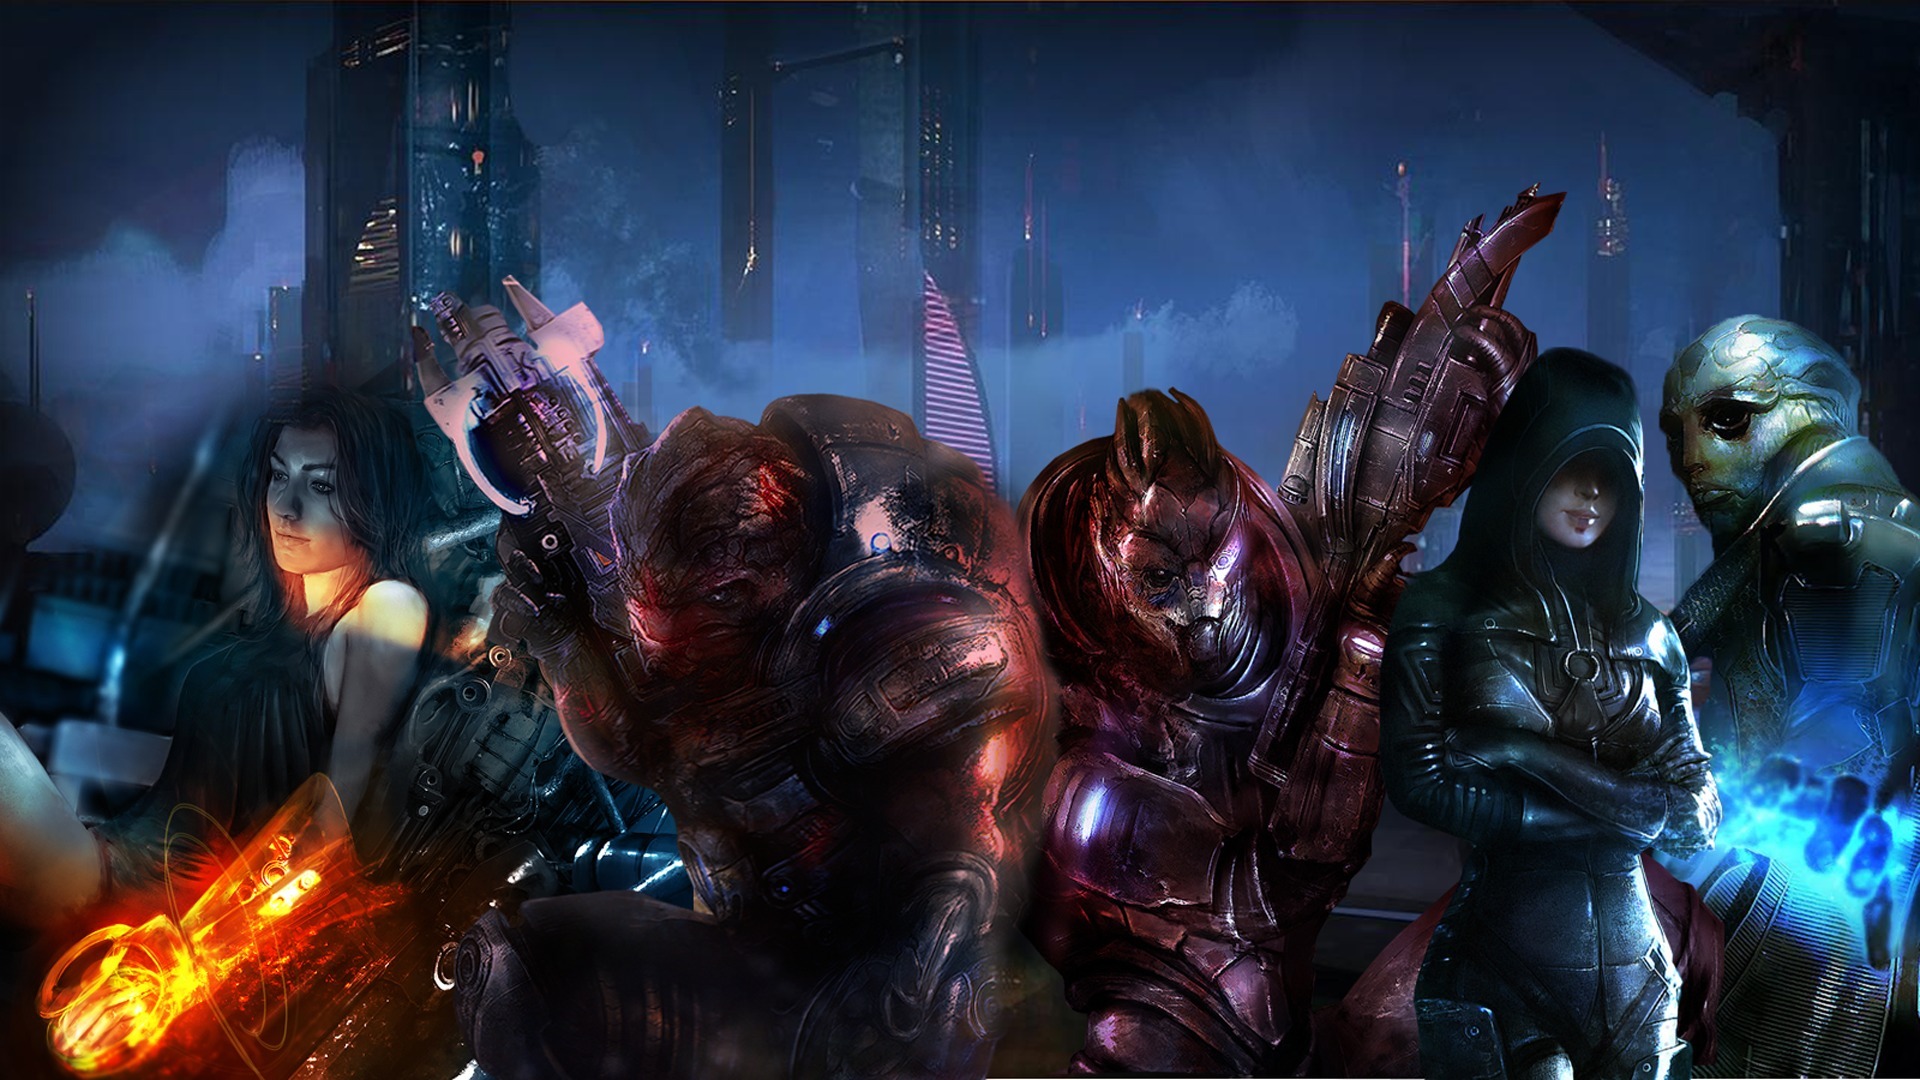 Immagini Mass Effect Mass Effect 3 gioco 1920x1080 Videogiochi